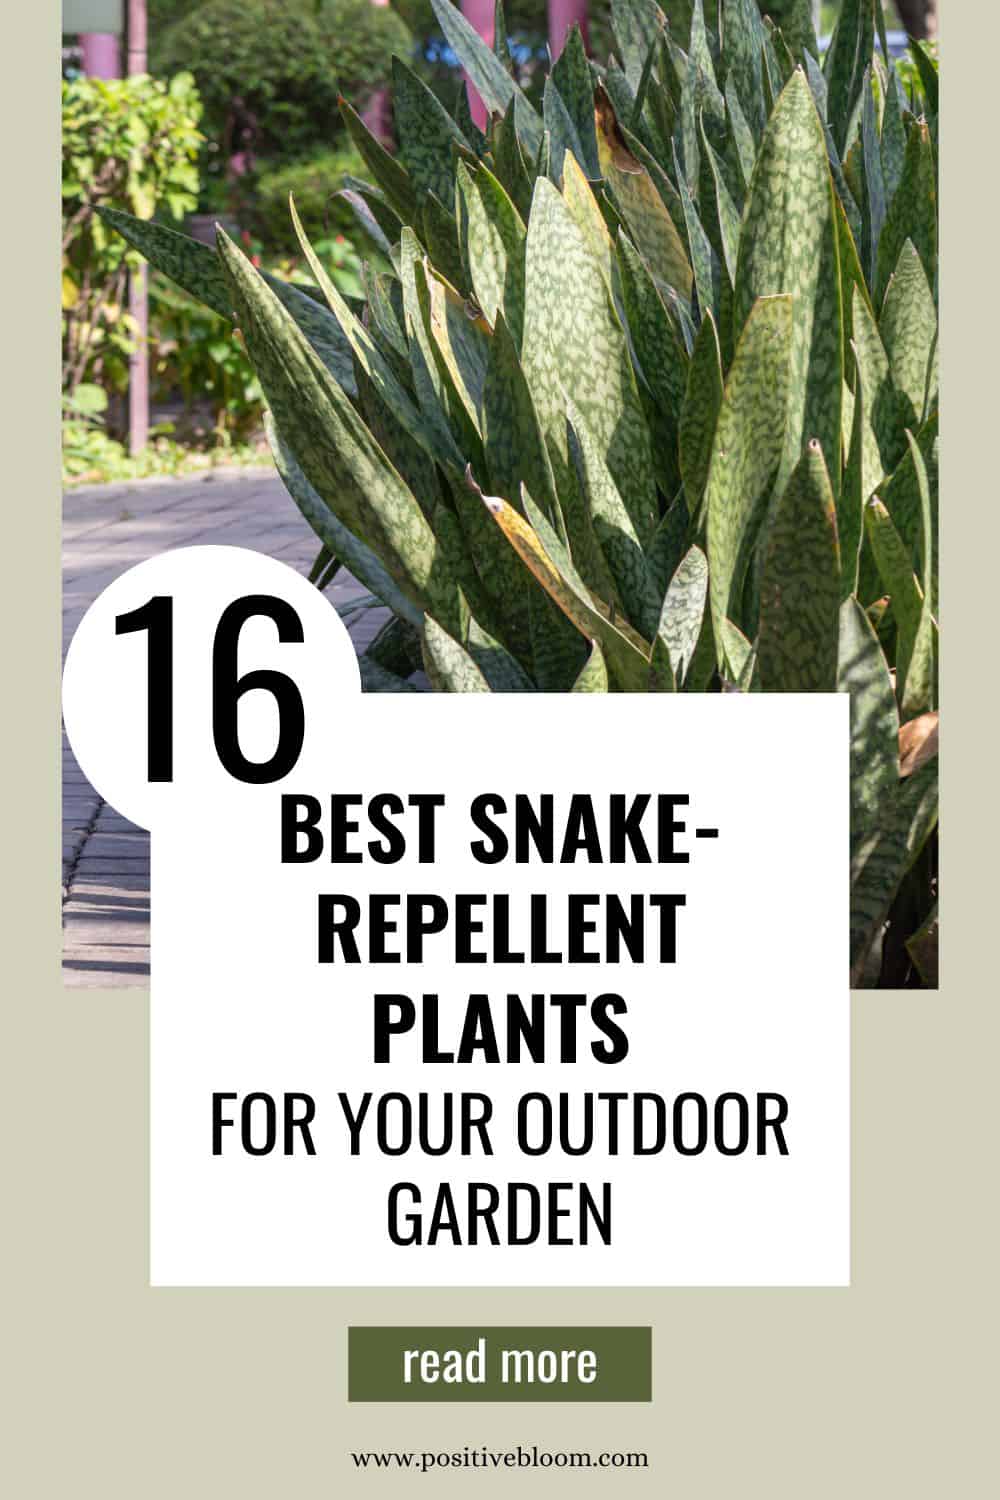 16 Best Snake-Repellent Plants For Your Outdoor Garden Pinterest